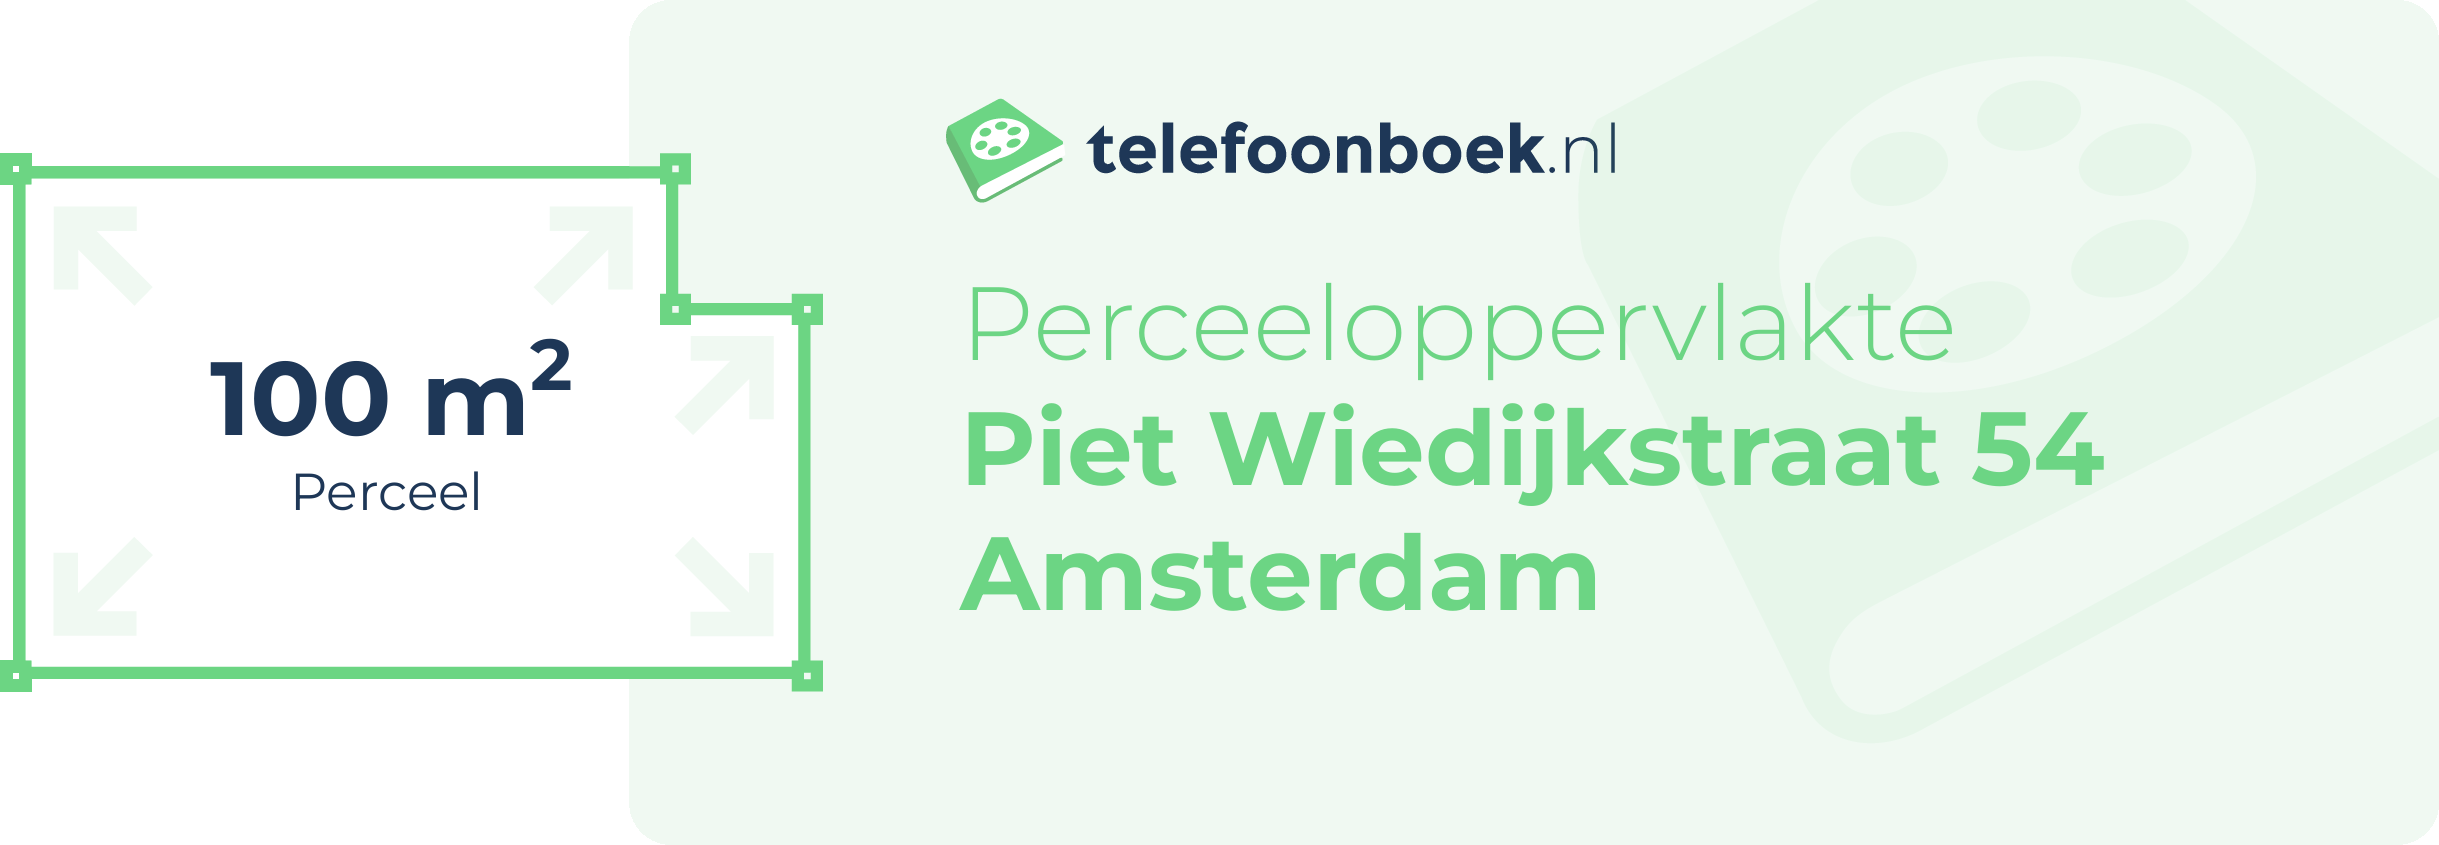 Perceeloppervlakte Piet Wiedijkstraat 54 Amsterdam